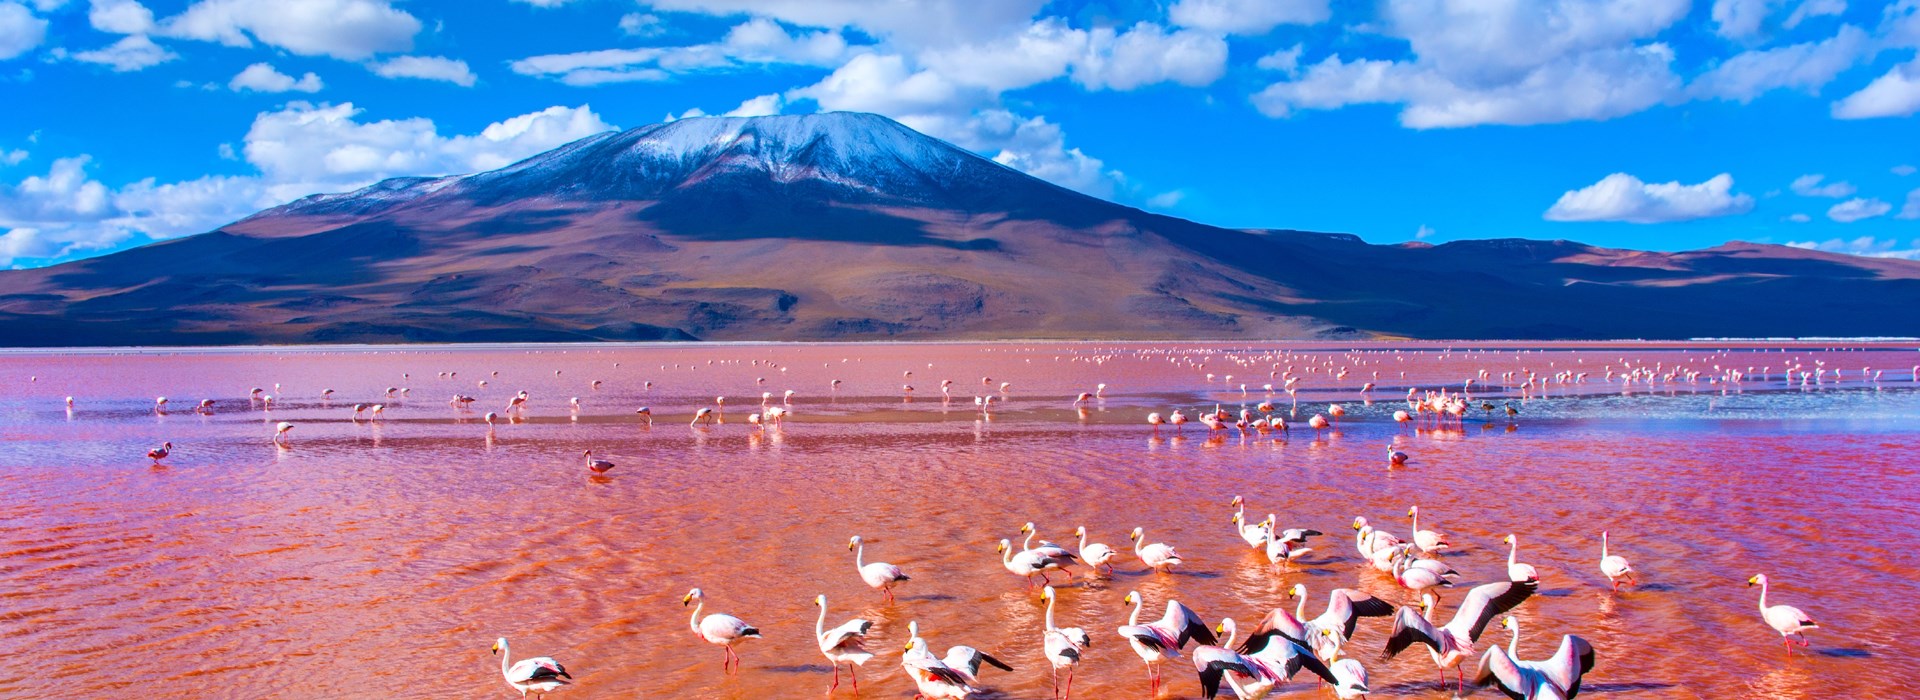 Visiter Laguna Colorada (Bolivie) - Pérou/Bolivie